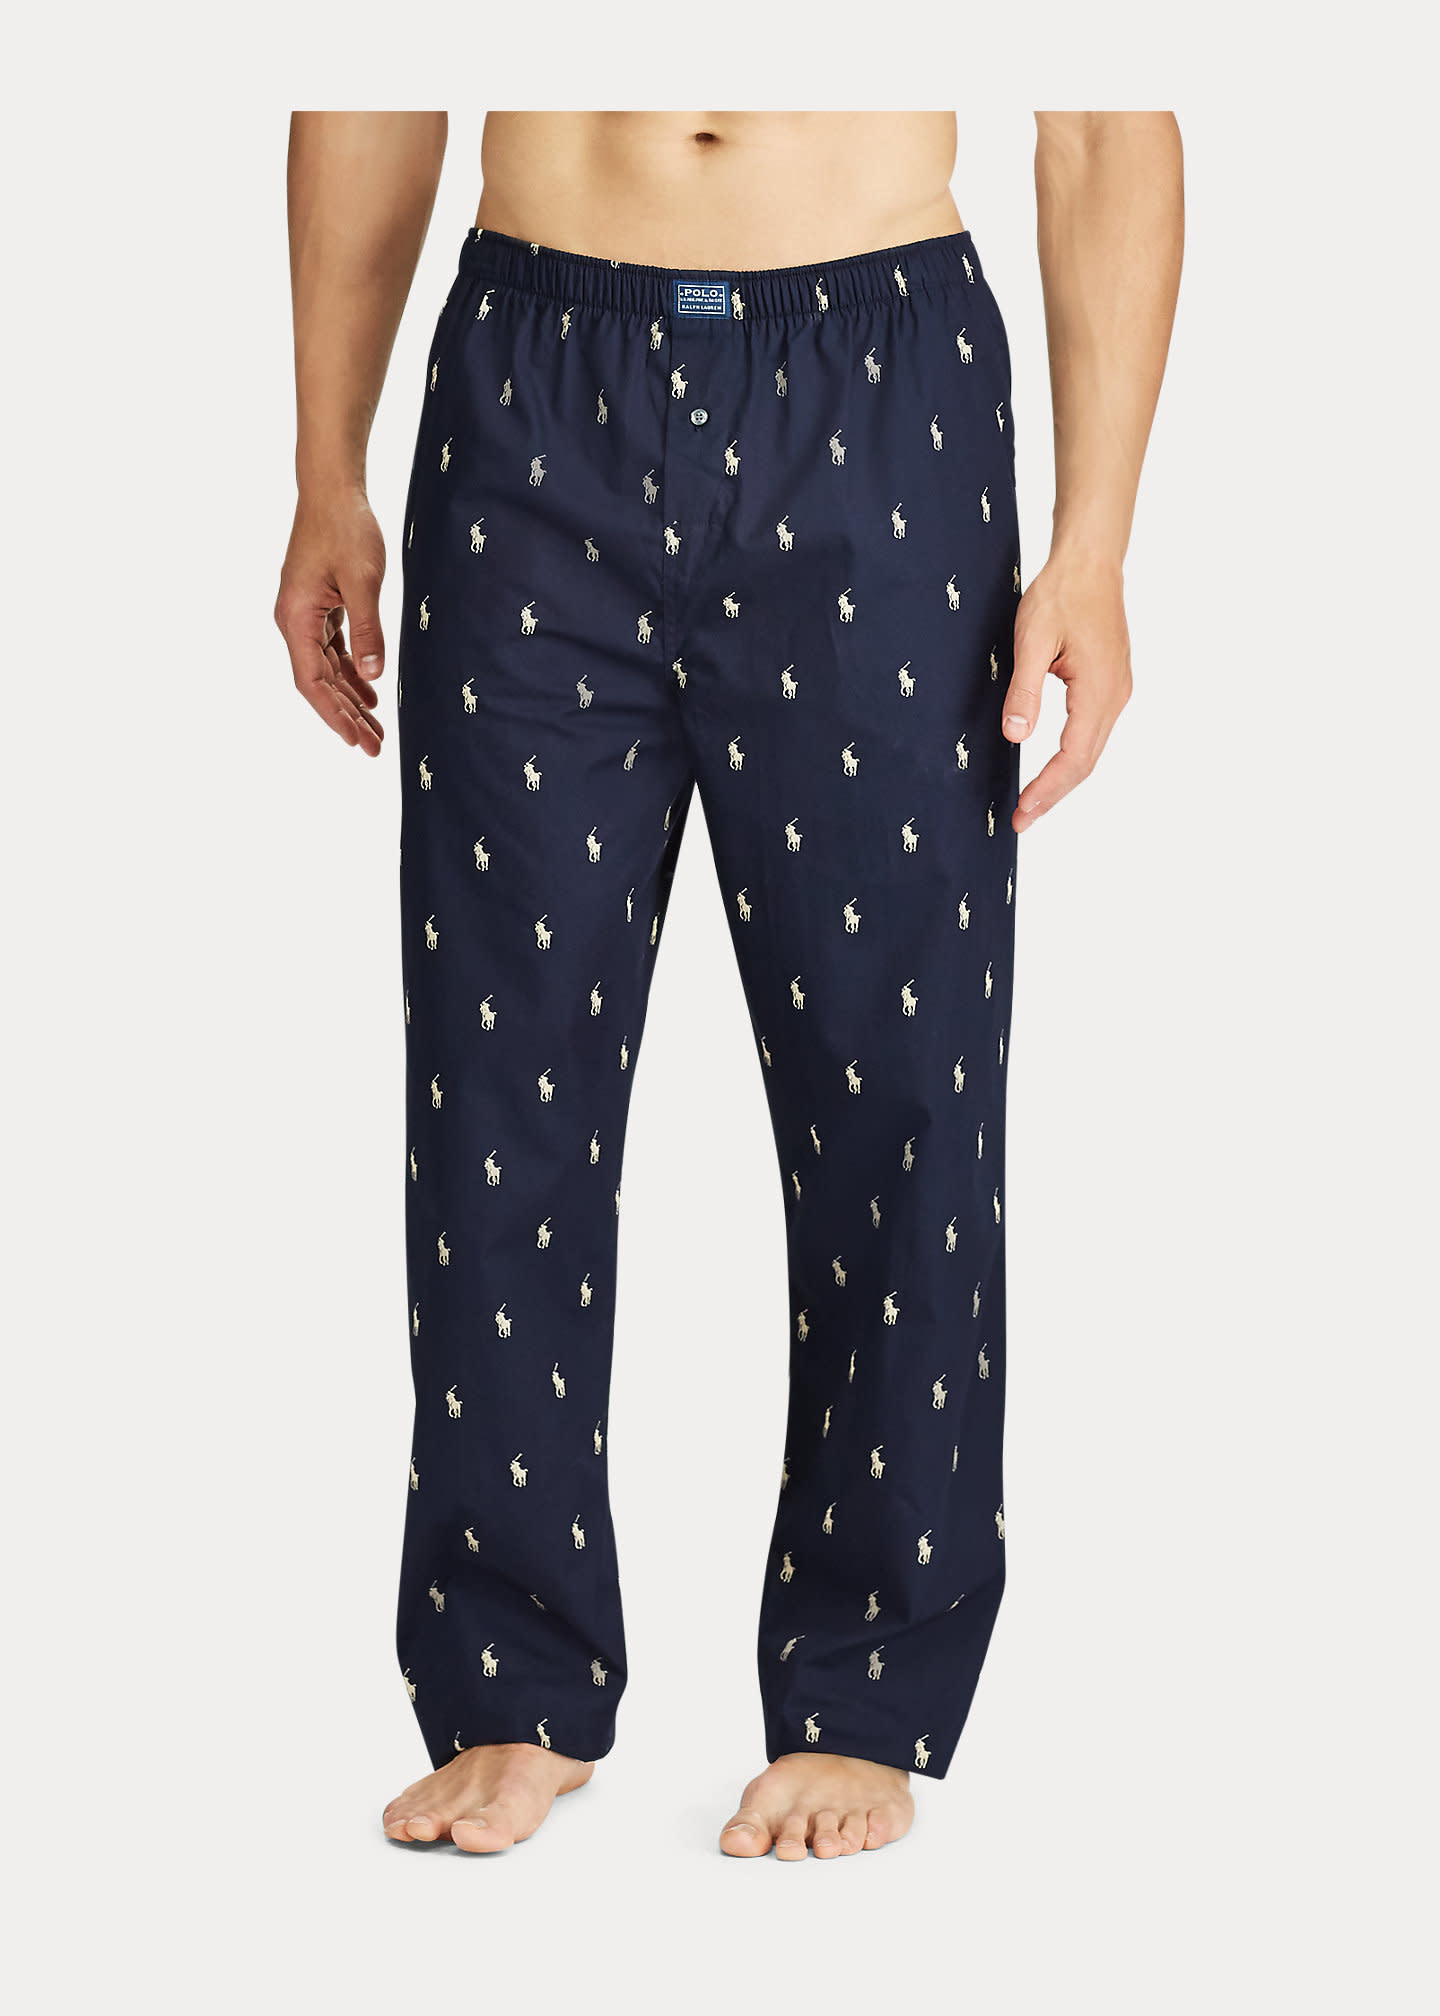 RL Polo Player Pajama Pants - Abraham's